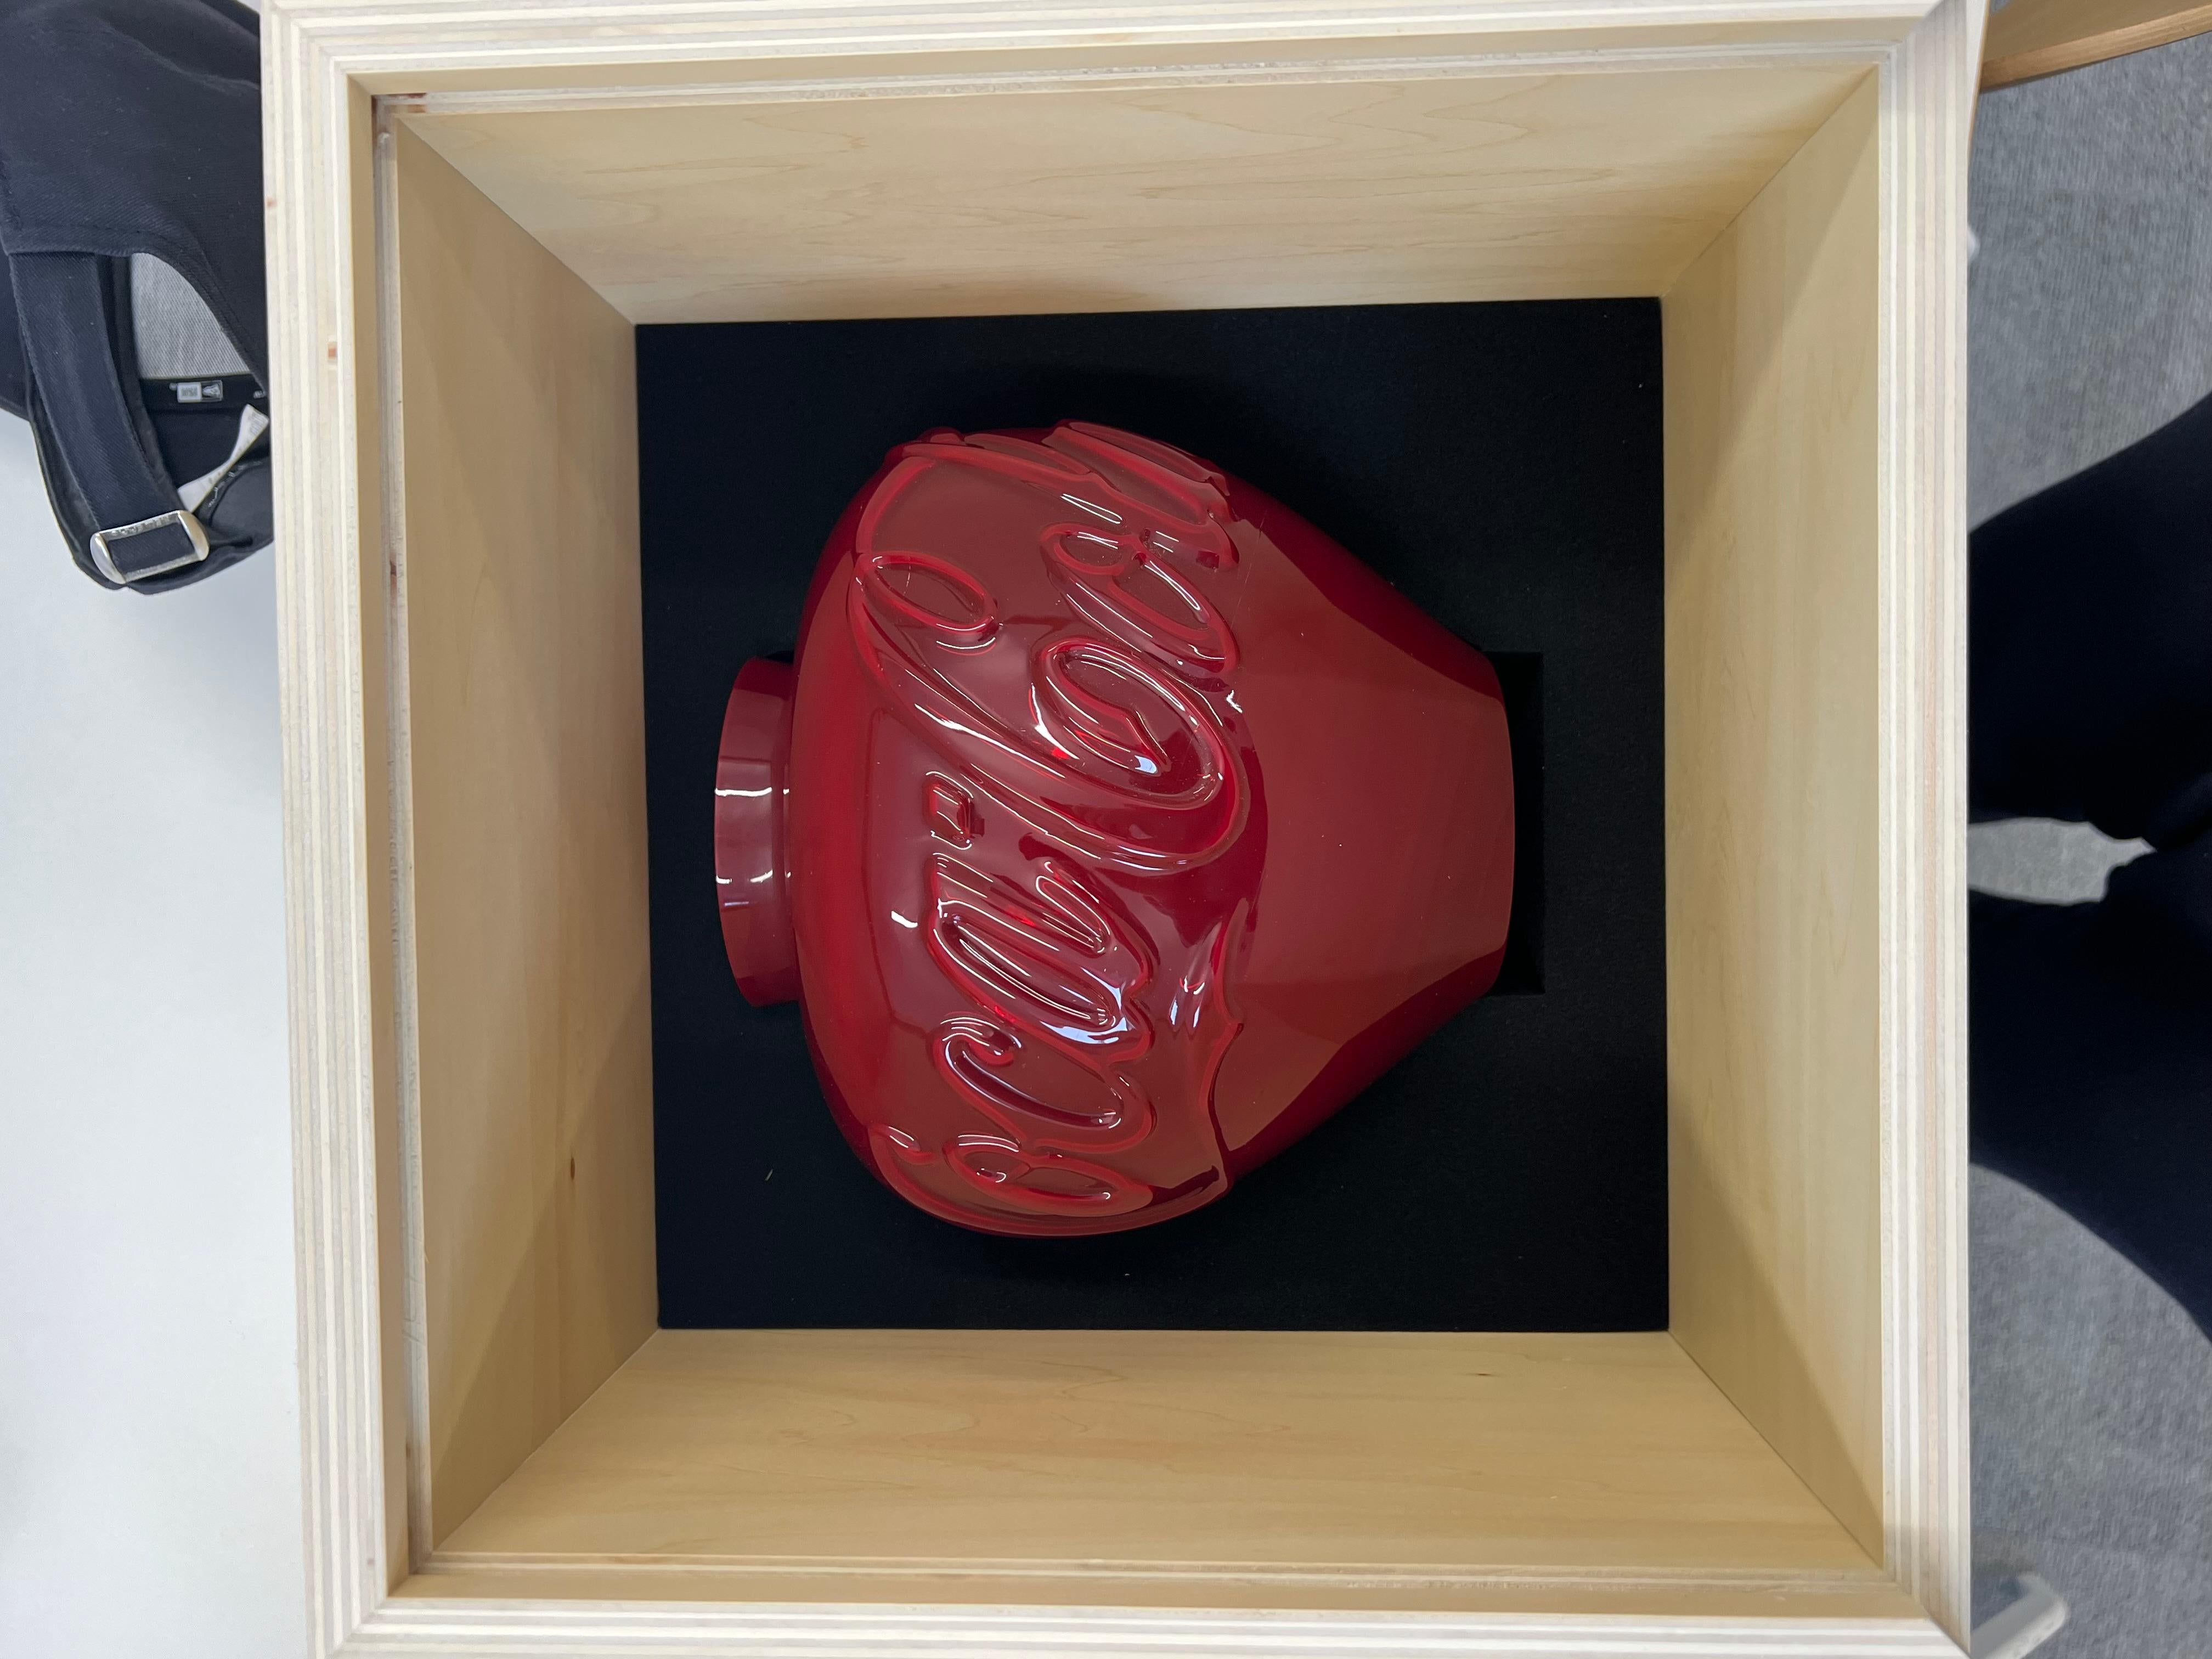 Ohne Titel (Coca Cola) 

Von AI Weiwei

Ai Weiwei ist ein renommierter zeitgenössischer chinesischer Künstler und Aktivist, dessen vielfältiges Werk Skulpturen, Installationen und soziale Kommentare umfasst, die sich häufig mit Themen wie